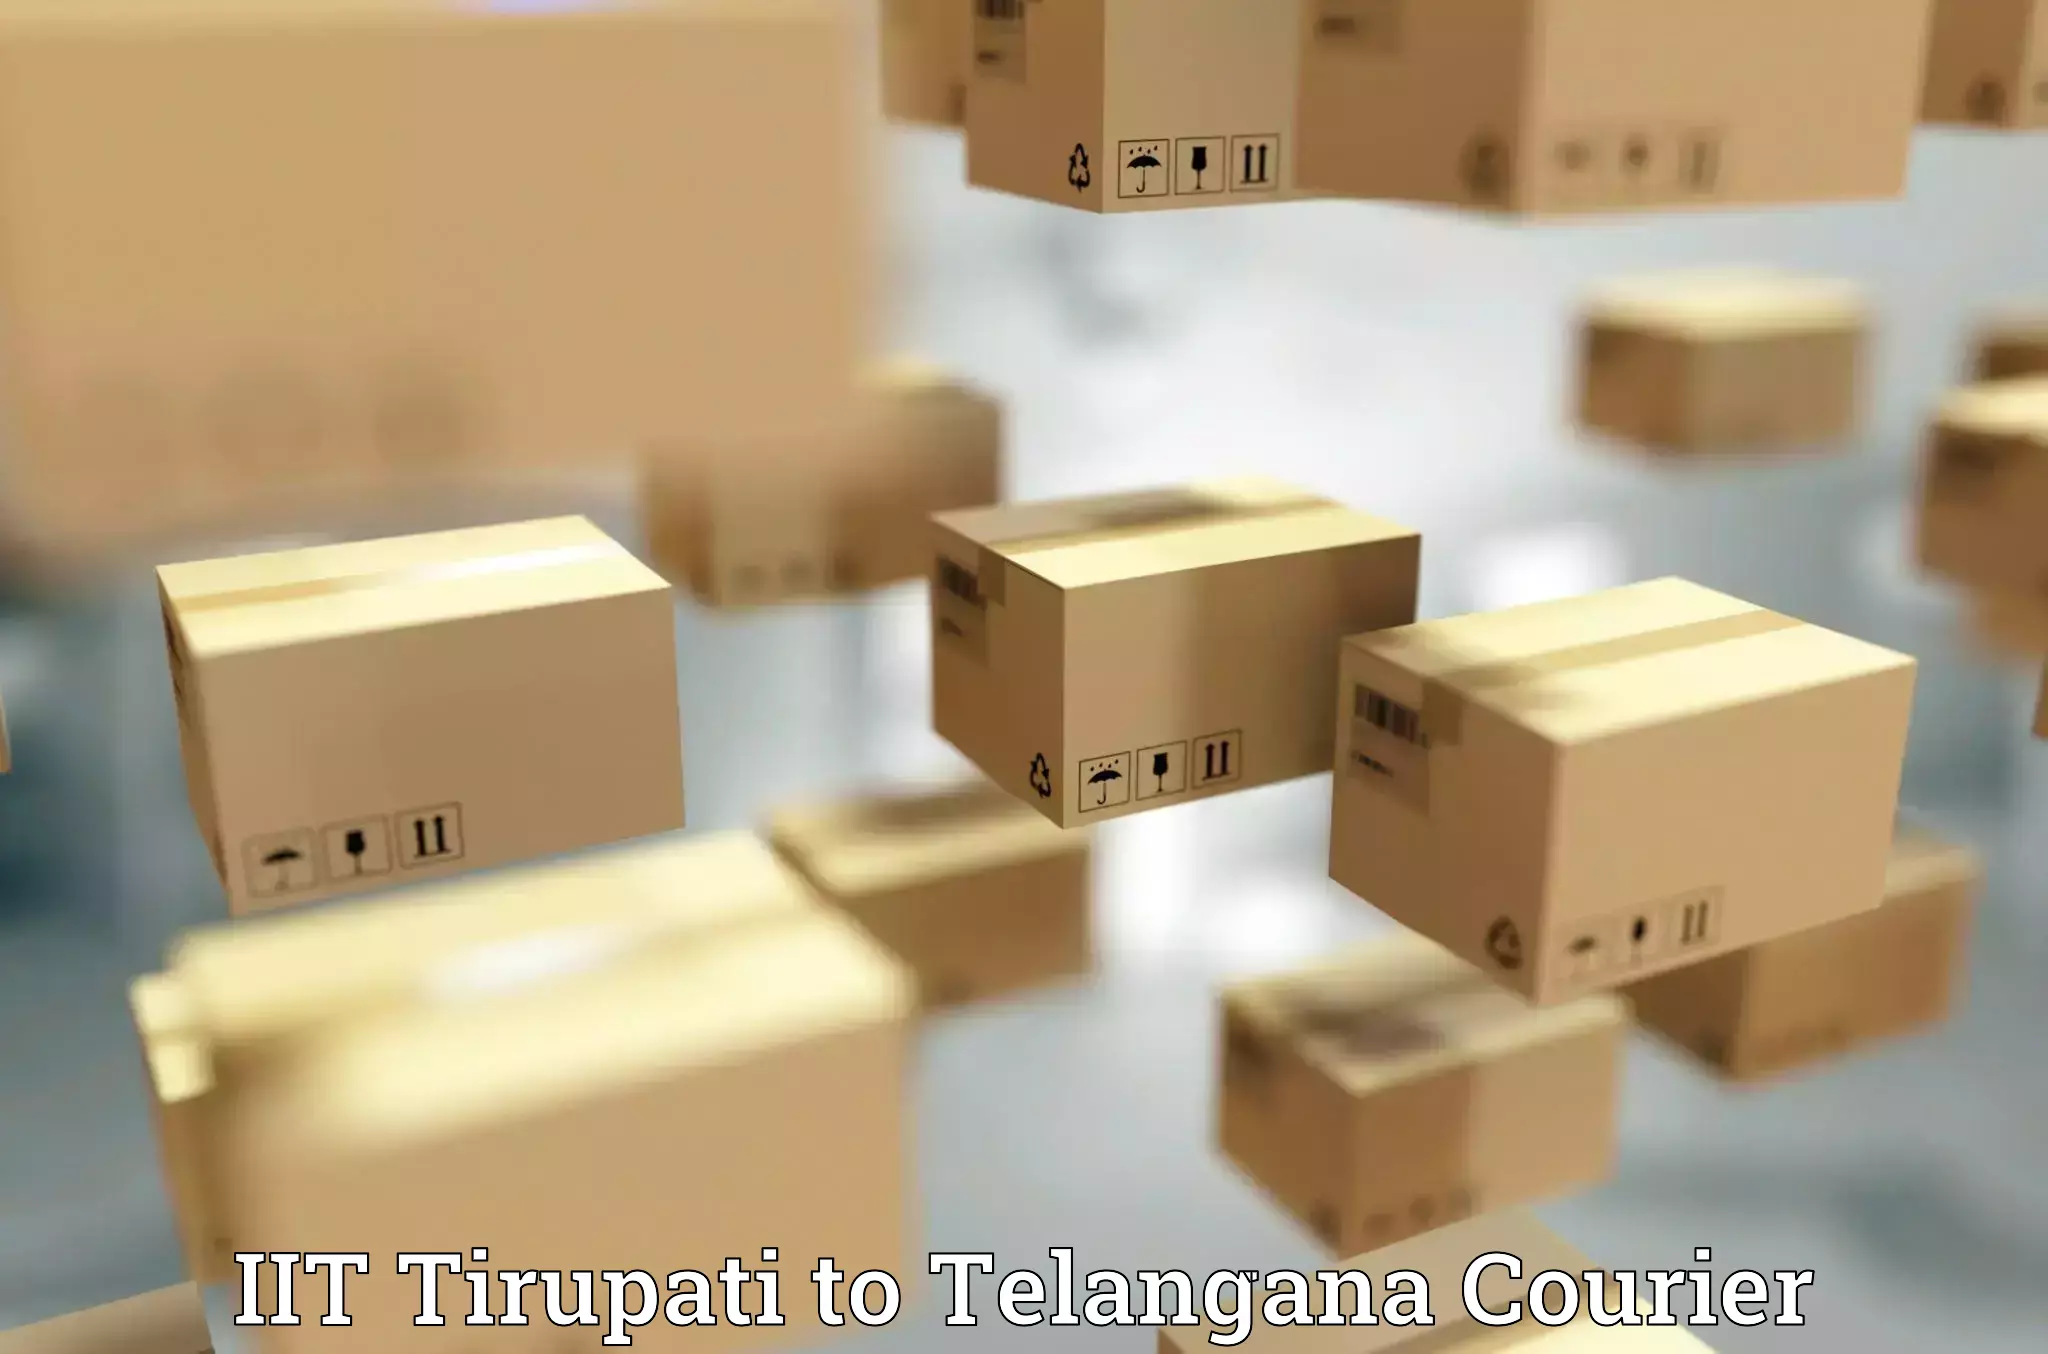 Efficient logistics management IIT Tirupati to Thungathurthi